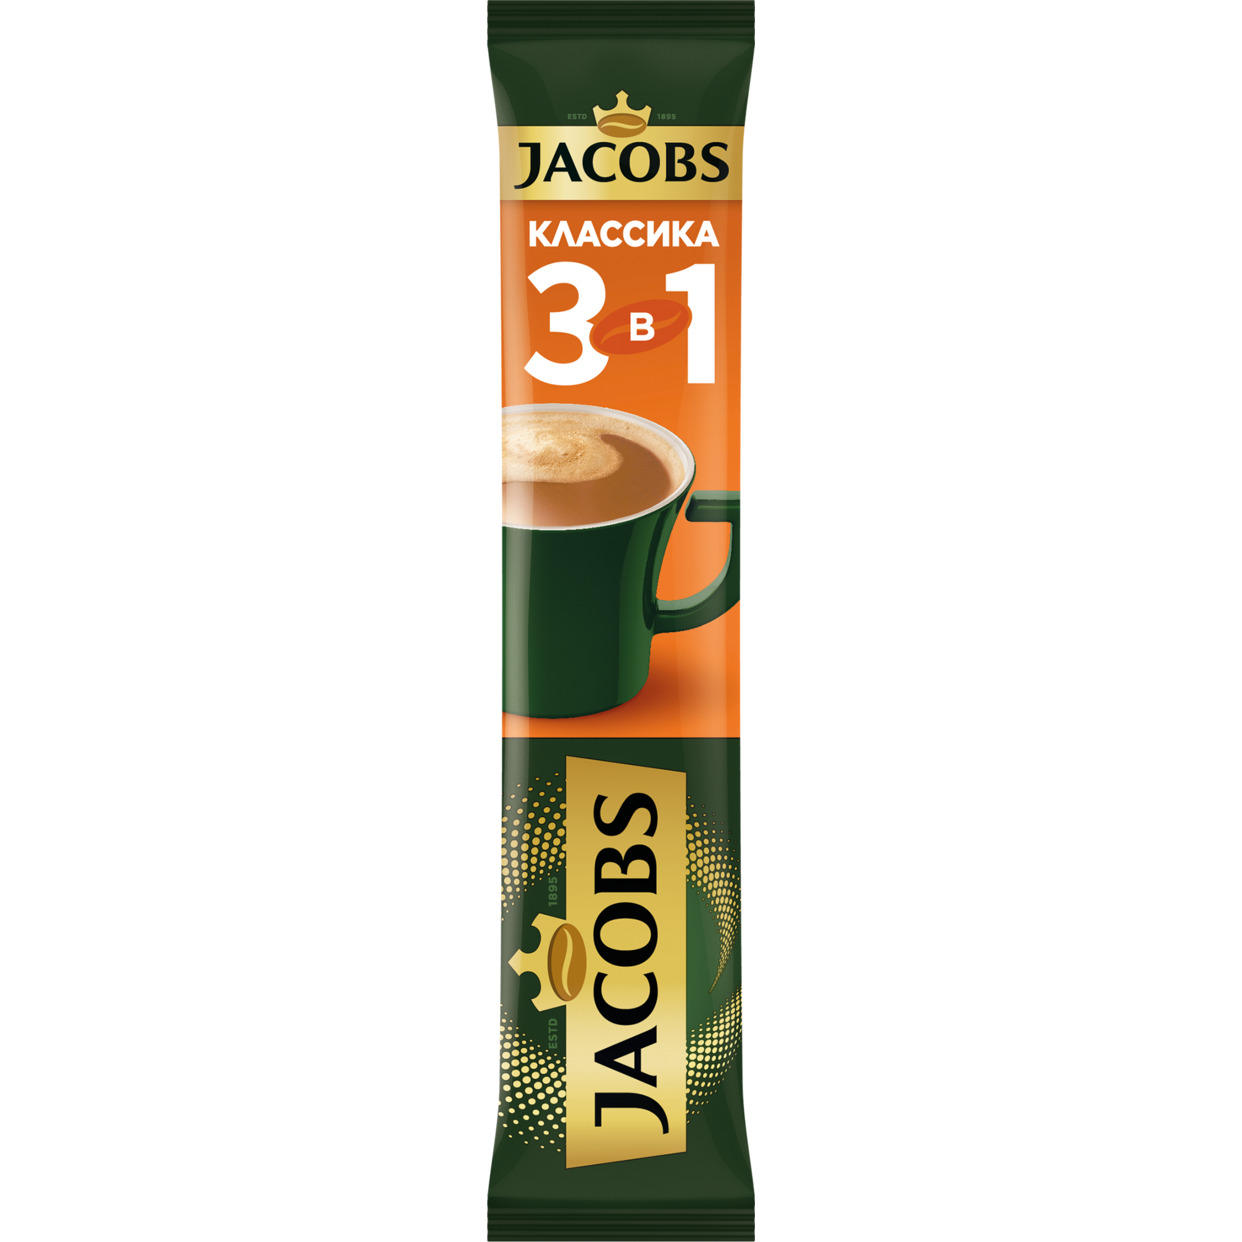 Напиток кофейный растворимый JACOBS 3 в 1 "Классика" 24x10x13,5г по акции в Пятерочке